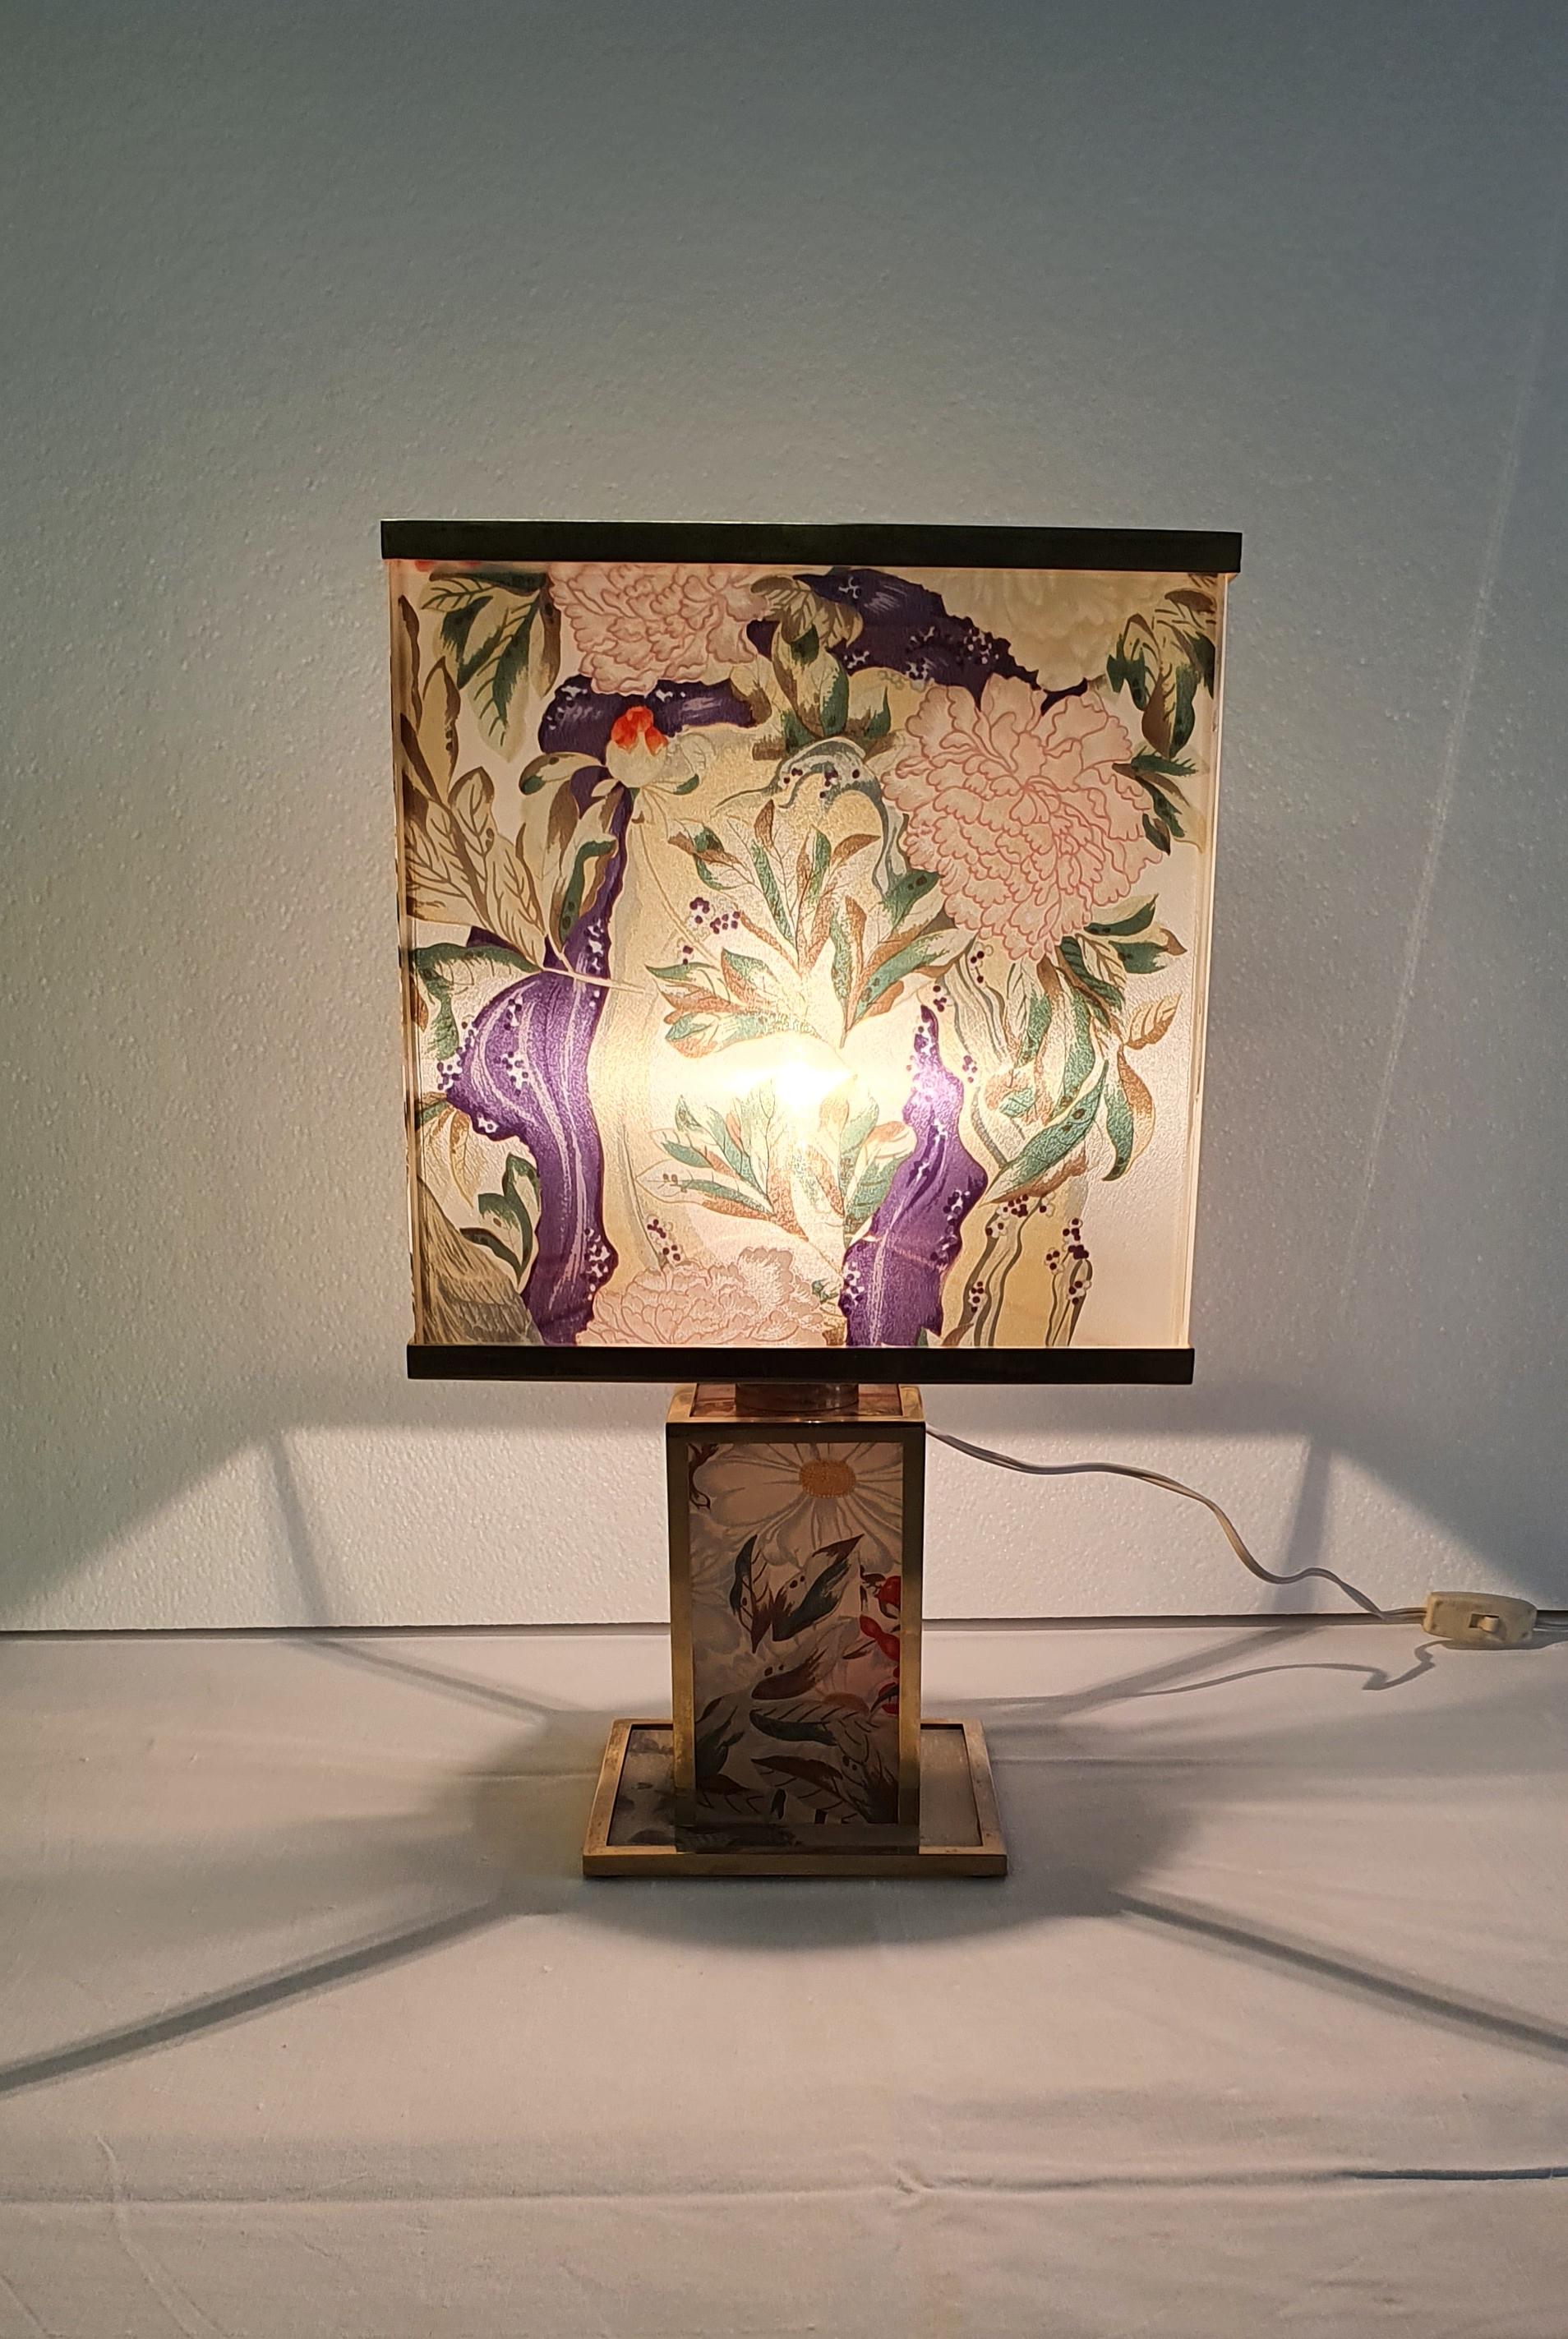 Siebdruck-Tischlampe aus Plexiglas mit Blumen und Messingdiagrammen 1970er Jahre.
Die Lampe ist funktionstüchtig.
Originale elektrische Anlage.
 